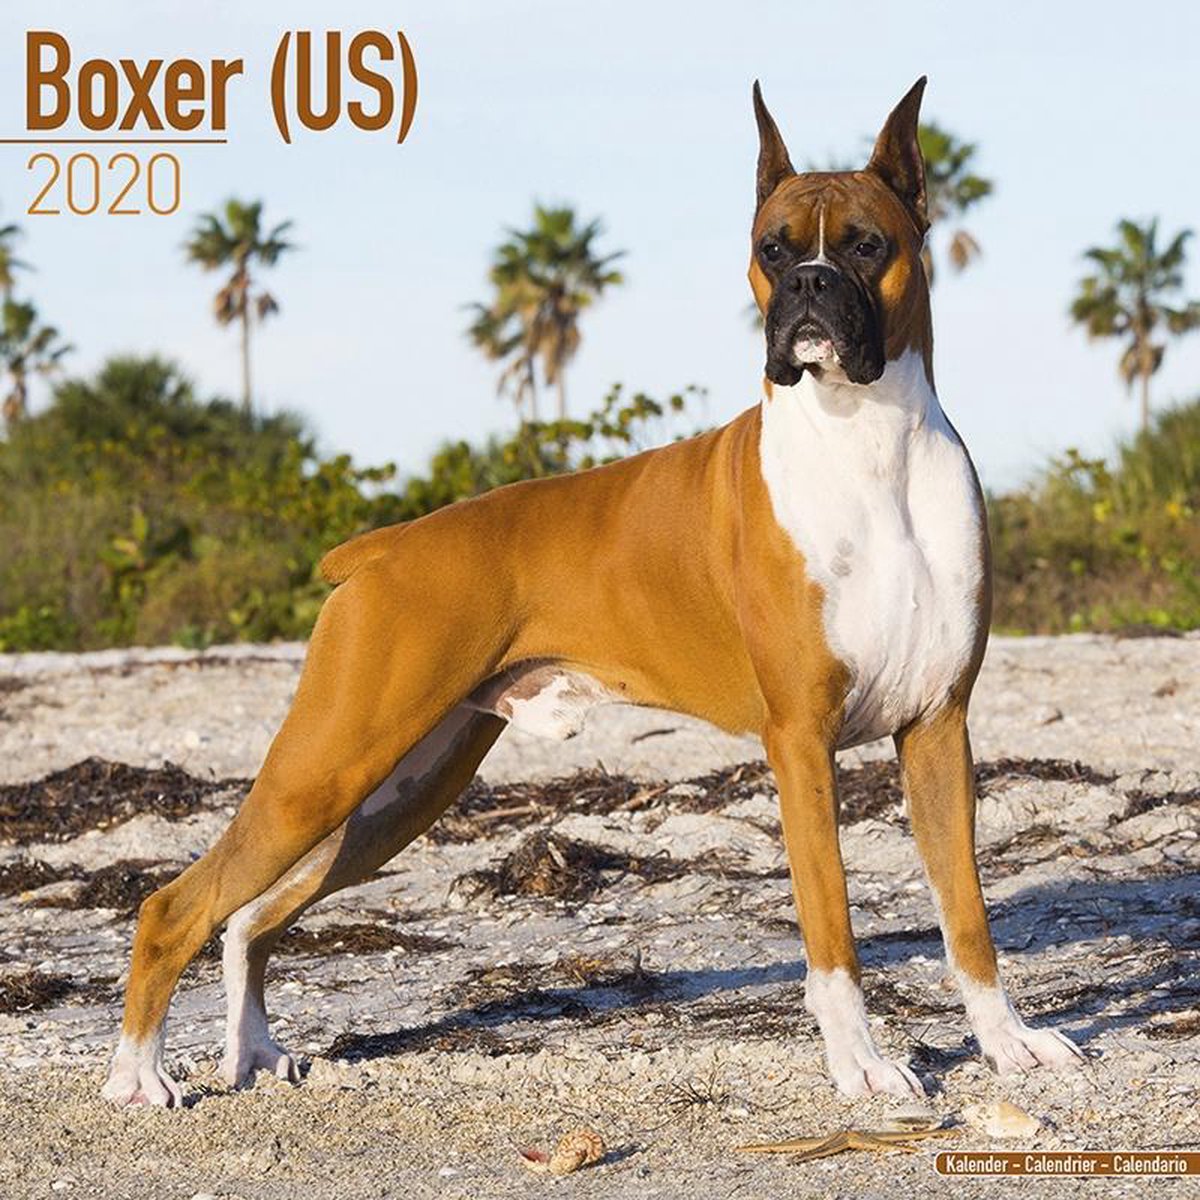 Boxer Kalender 2020 (us)